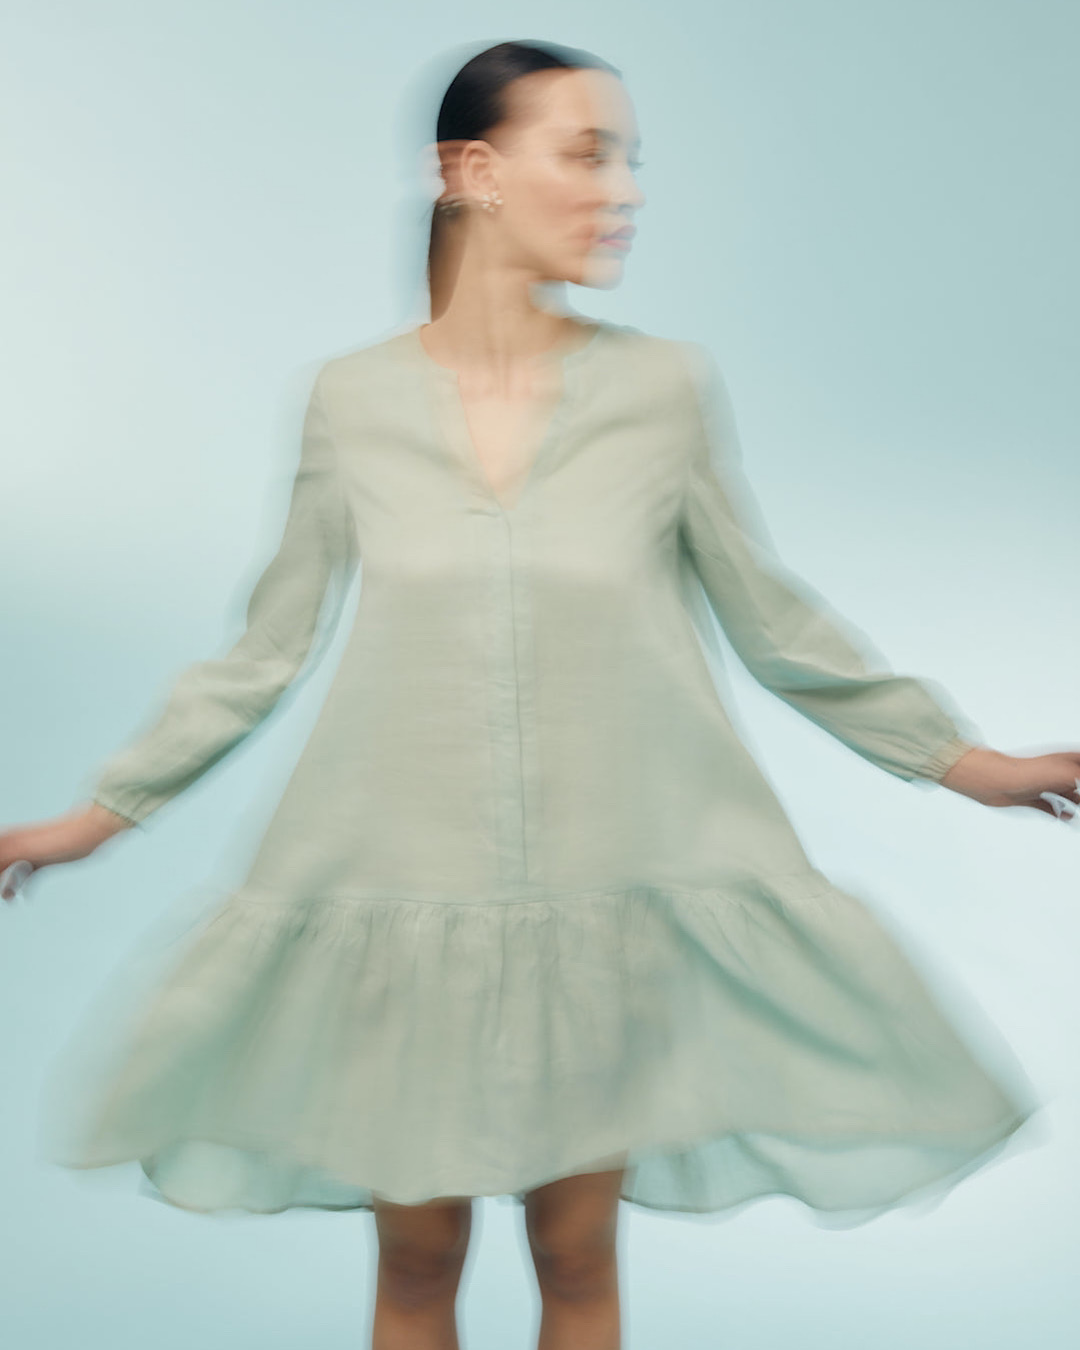 Woman mid-spin in a seafoam linen dress.